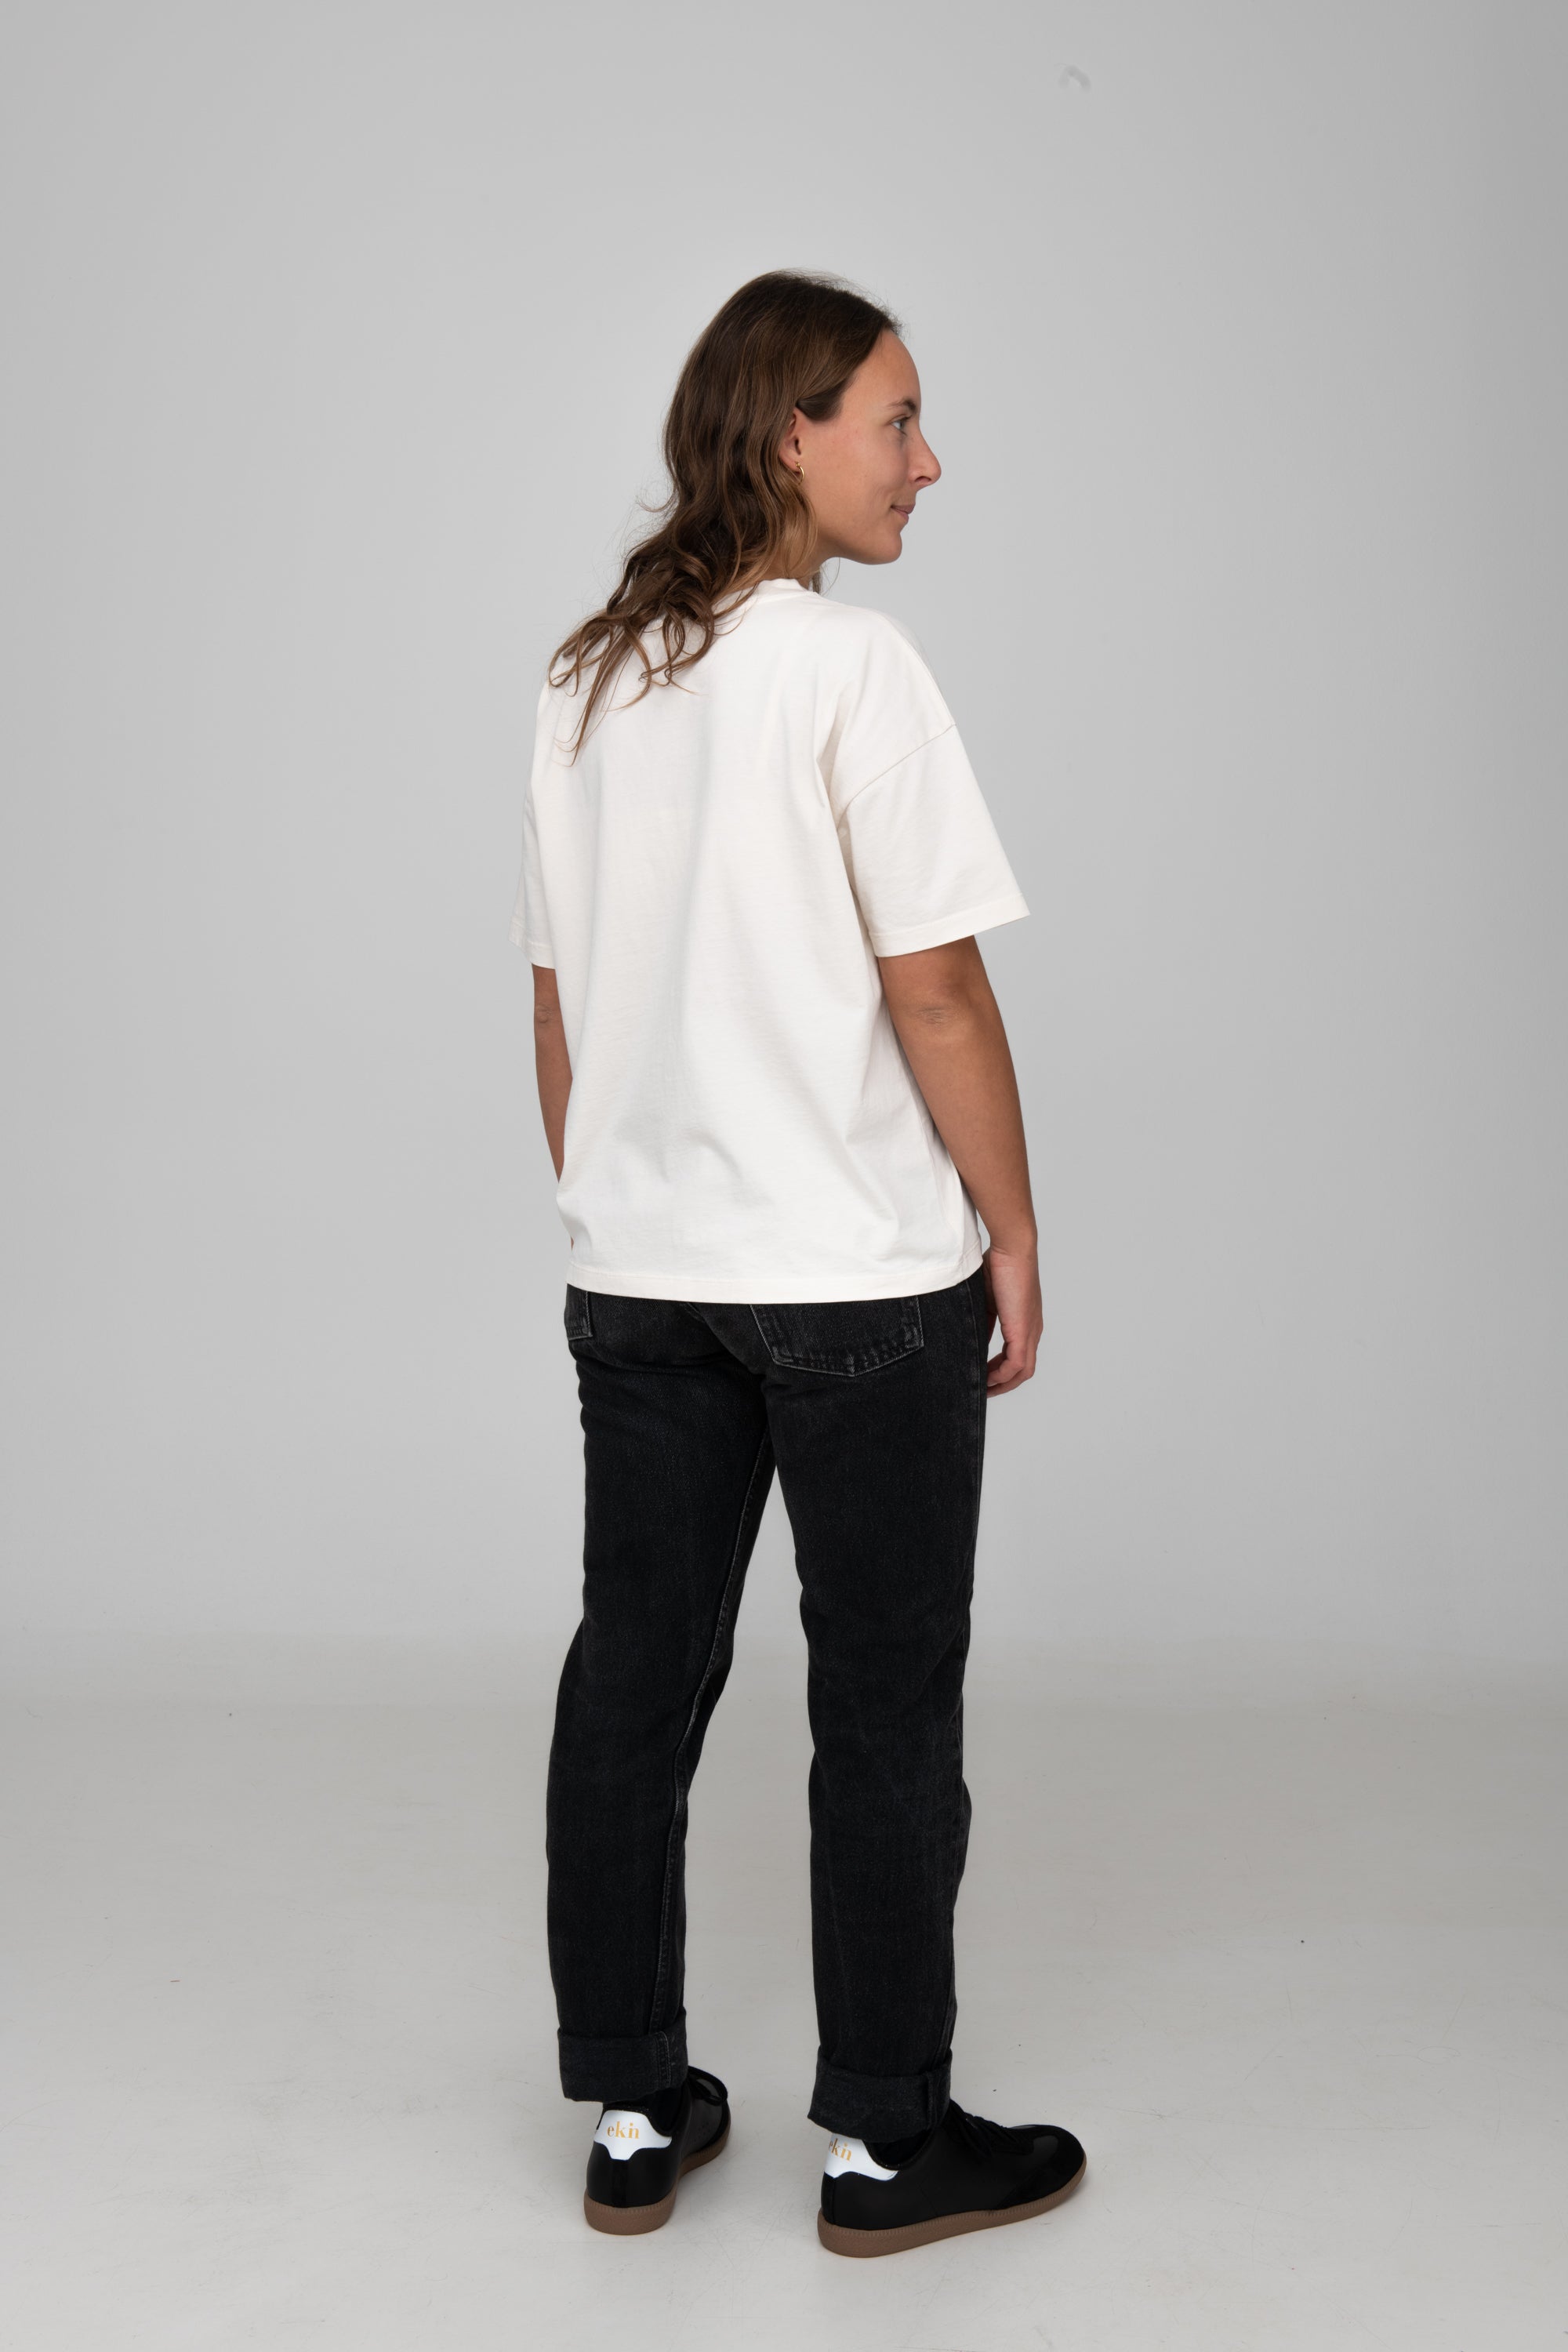 Damen T-Shirt von SALZWASSER in Off-White an Frau